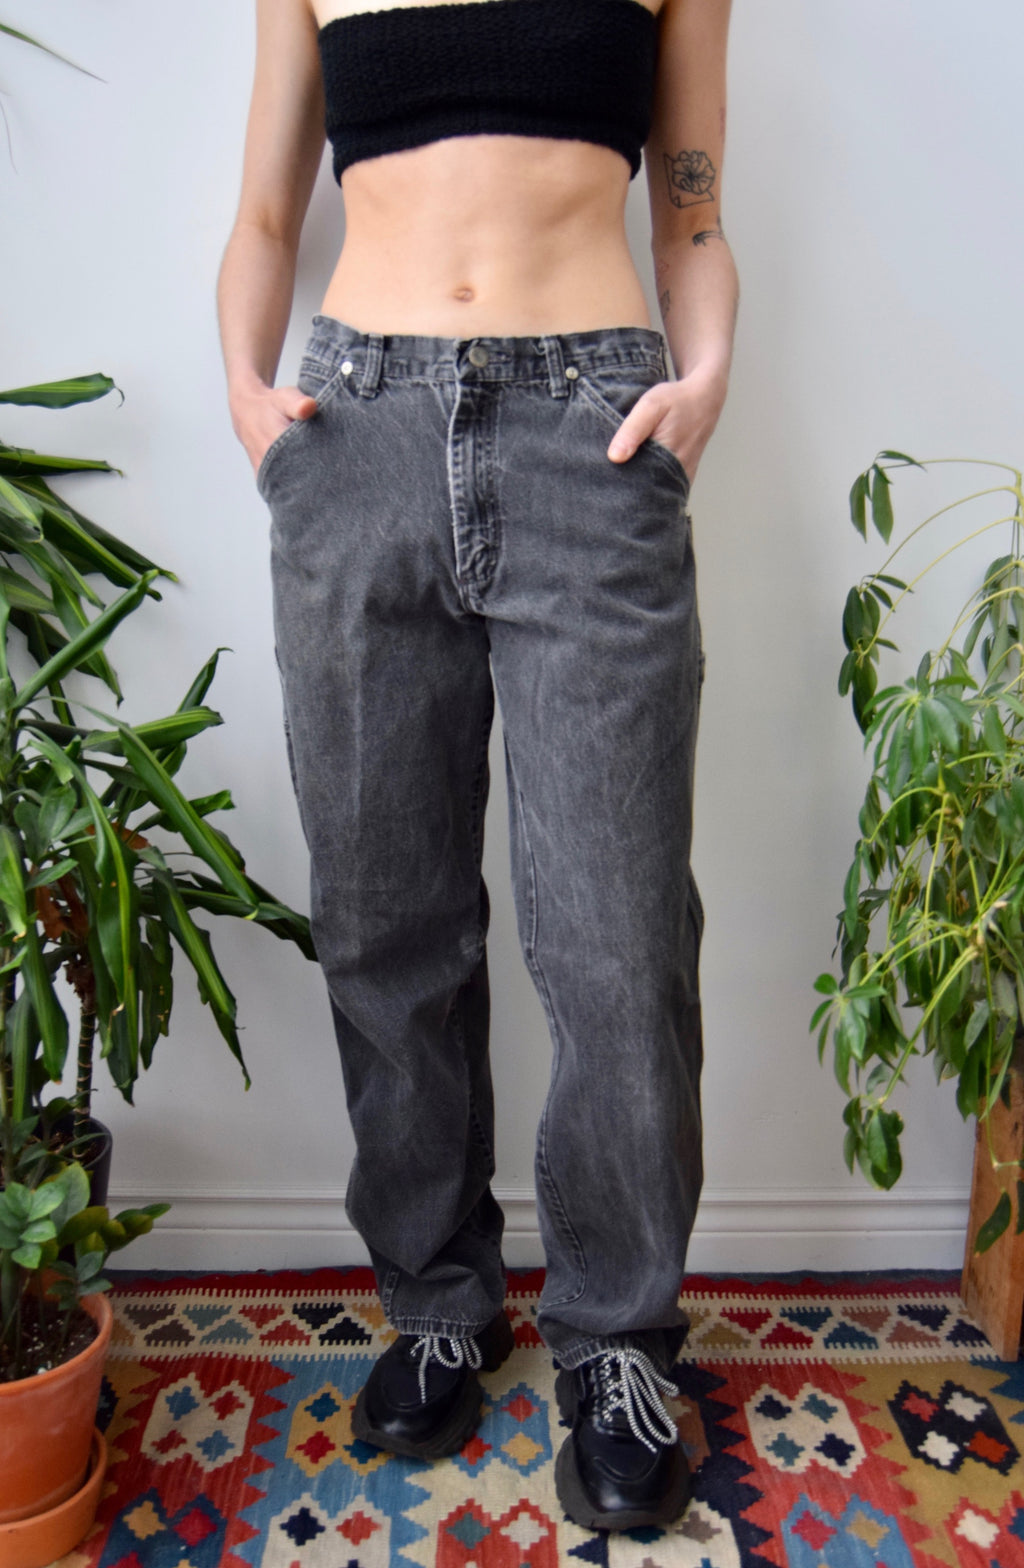 Wrangler Carpenter Jeans